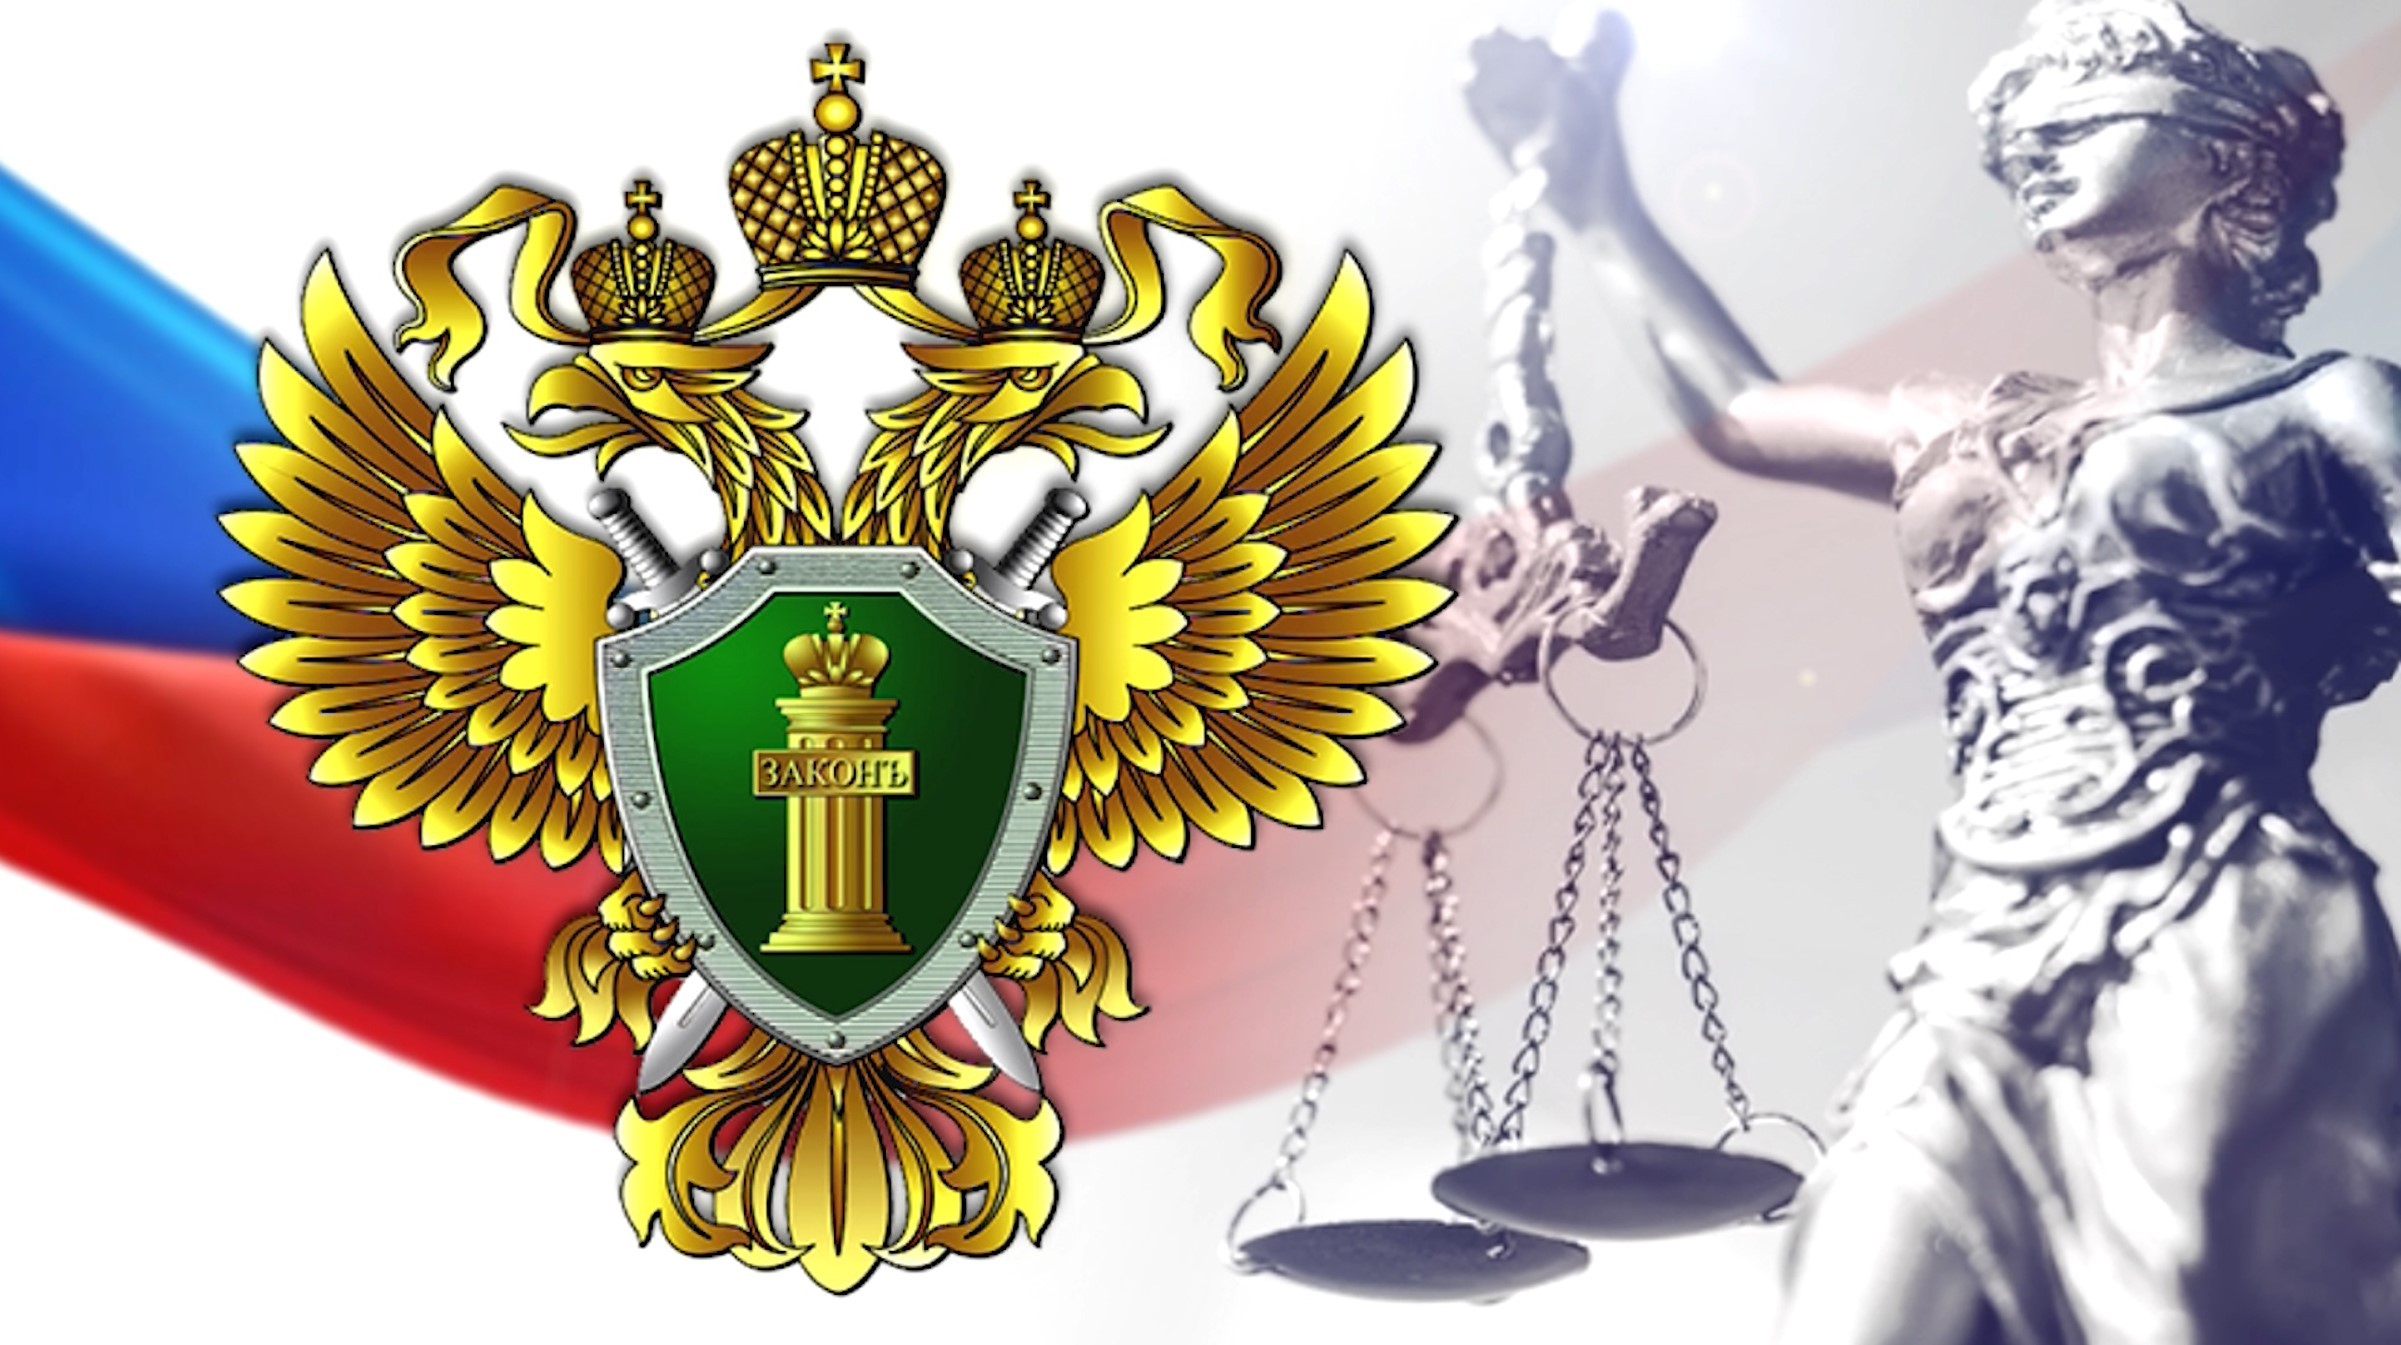 Закон и порядок - передача о работе прокуроров в Магаданской области